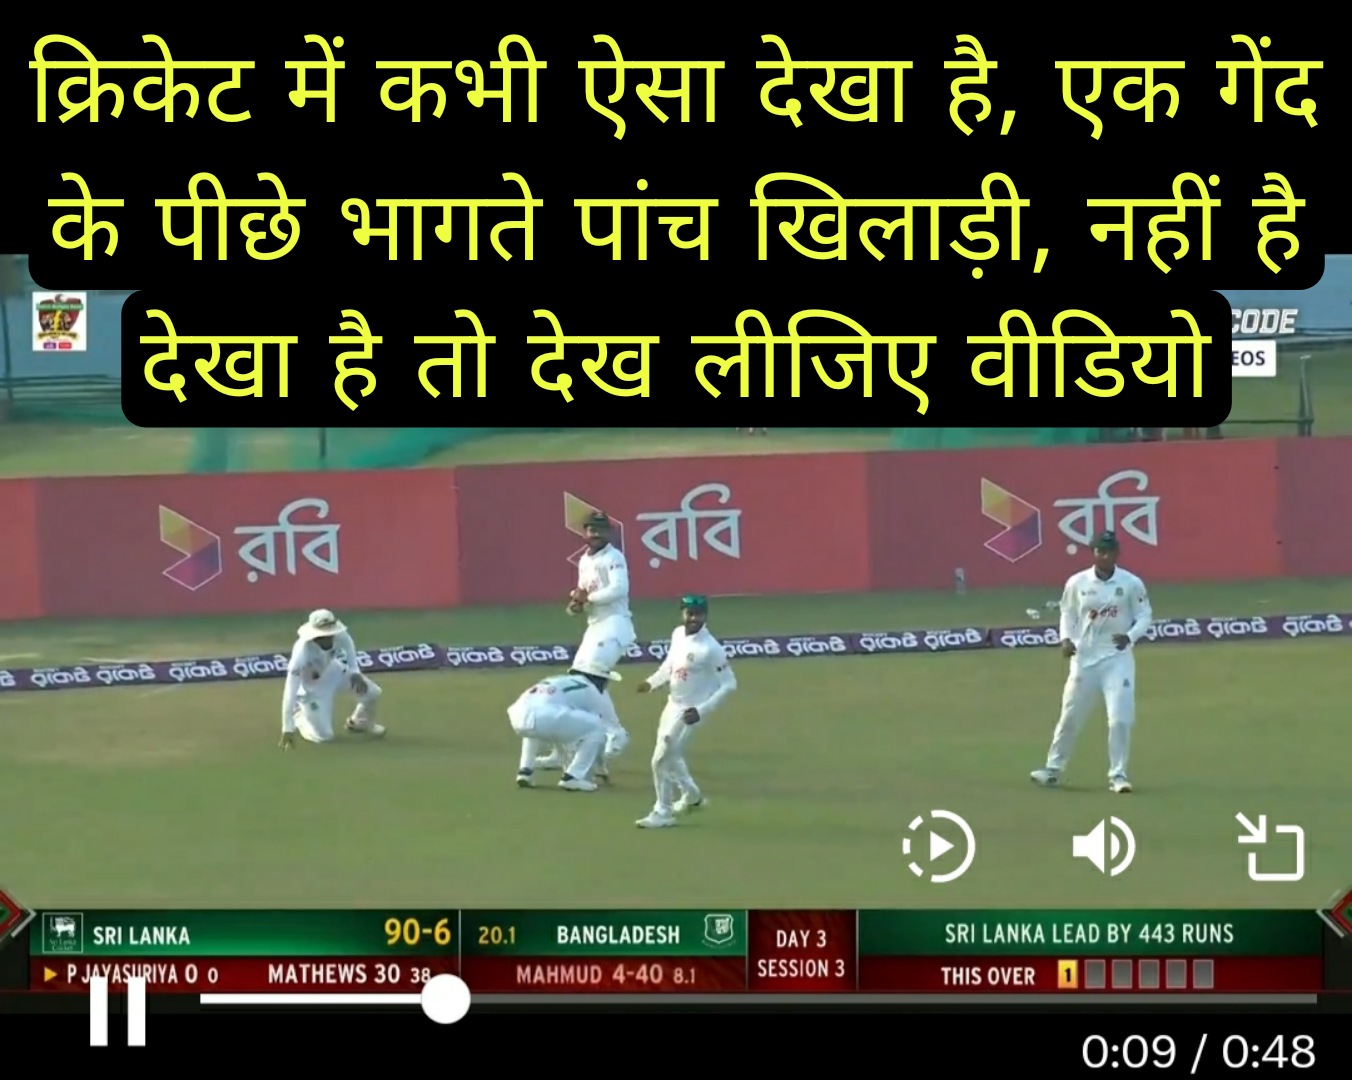 क्रिकेट में कभी ऐसा देखा है, एक गेंद के पीछे भागते पांच खिलाड़ी, नहीं है देखा है तो देख लीजिए वीडियो